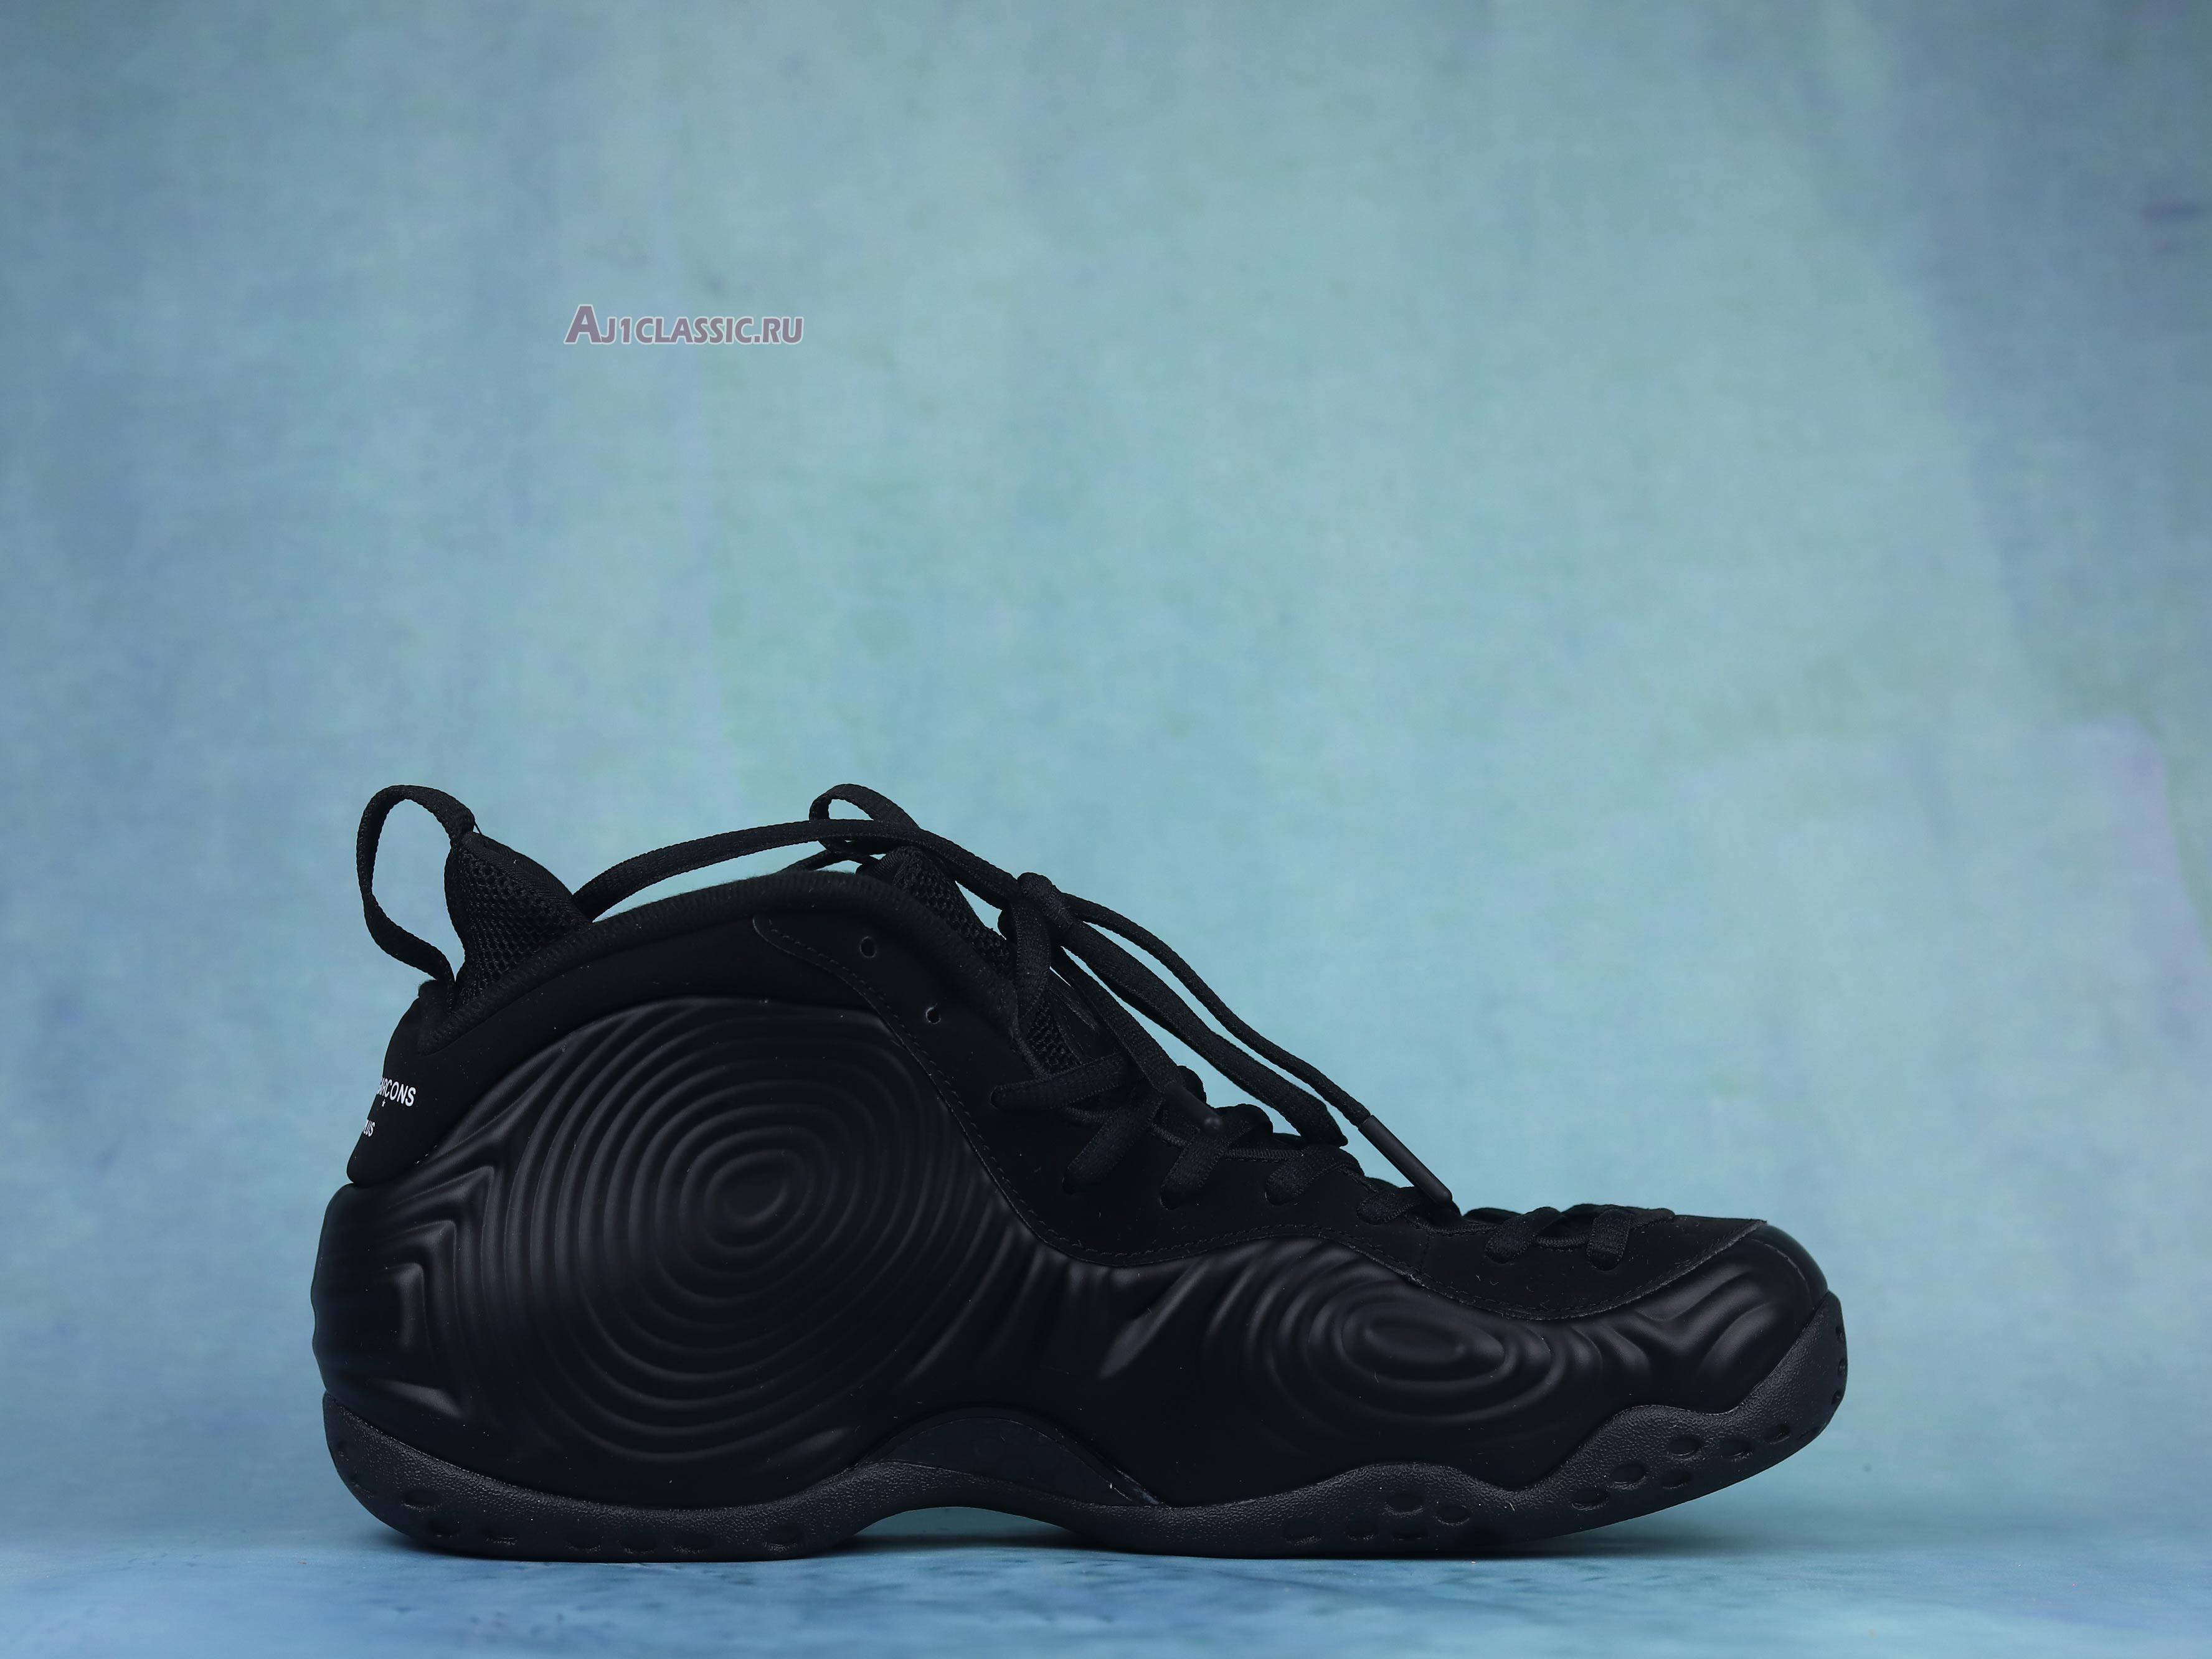 Comme des Garçons Homme Plus x Nike Air Foamposite One "Black" DJ7952-001